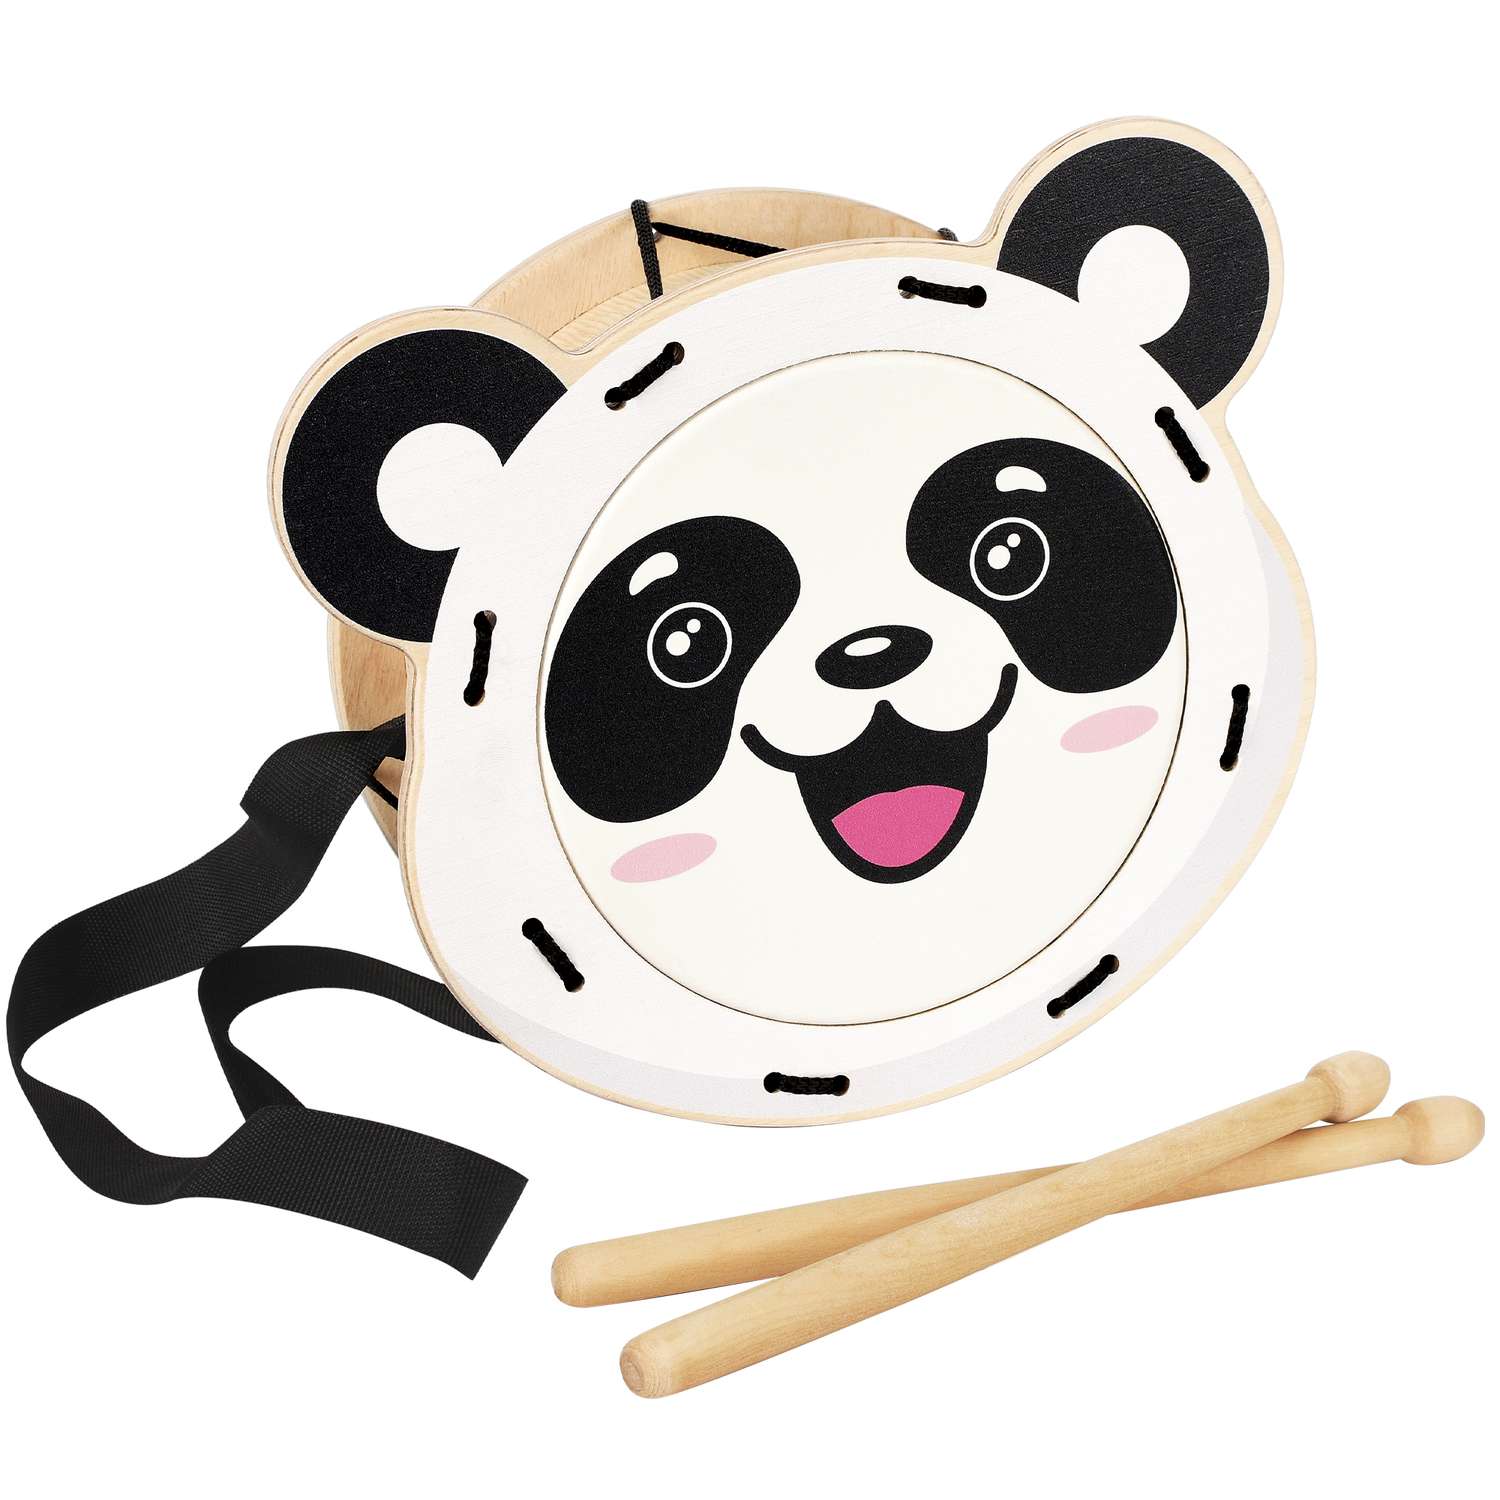 Музыкальный инструмент детский Мега Тойс деревянный барабан игрушка Панда - фото 1